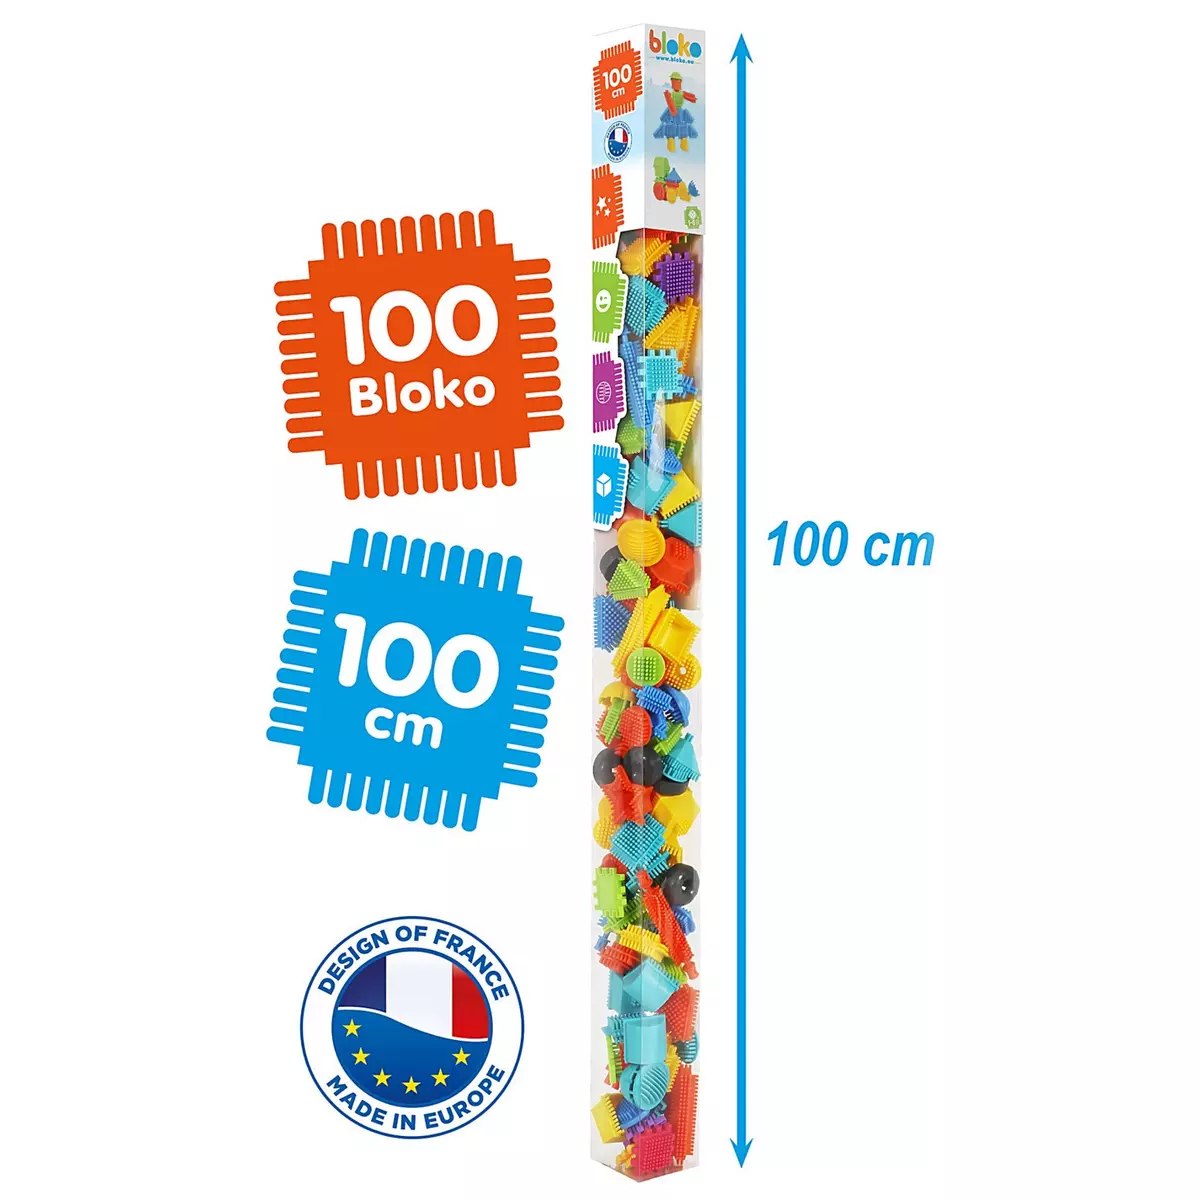 Bloko Bloko display 12 tubes 1 mètre 100 bloko